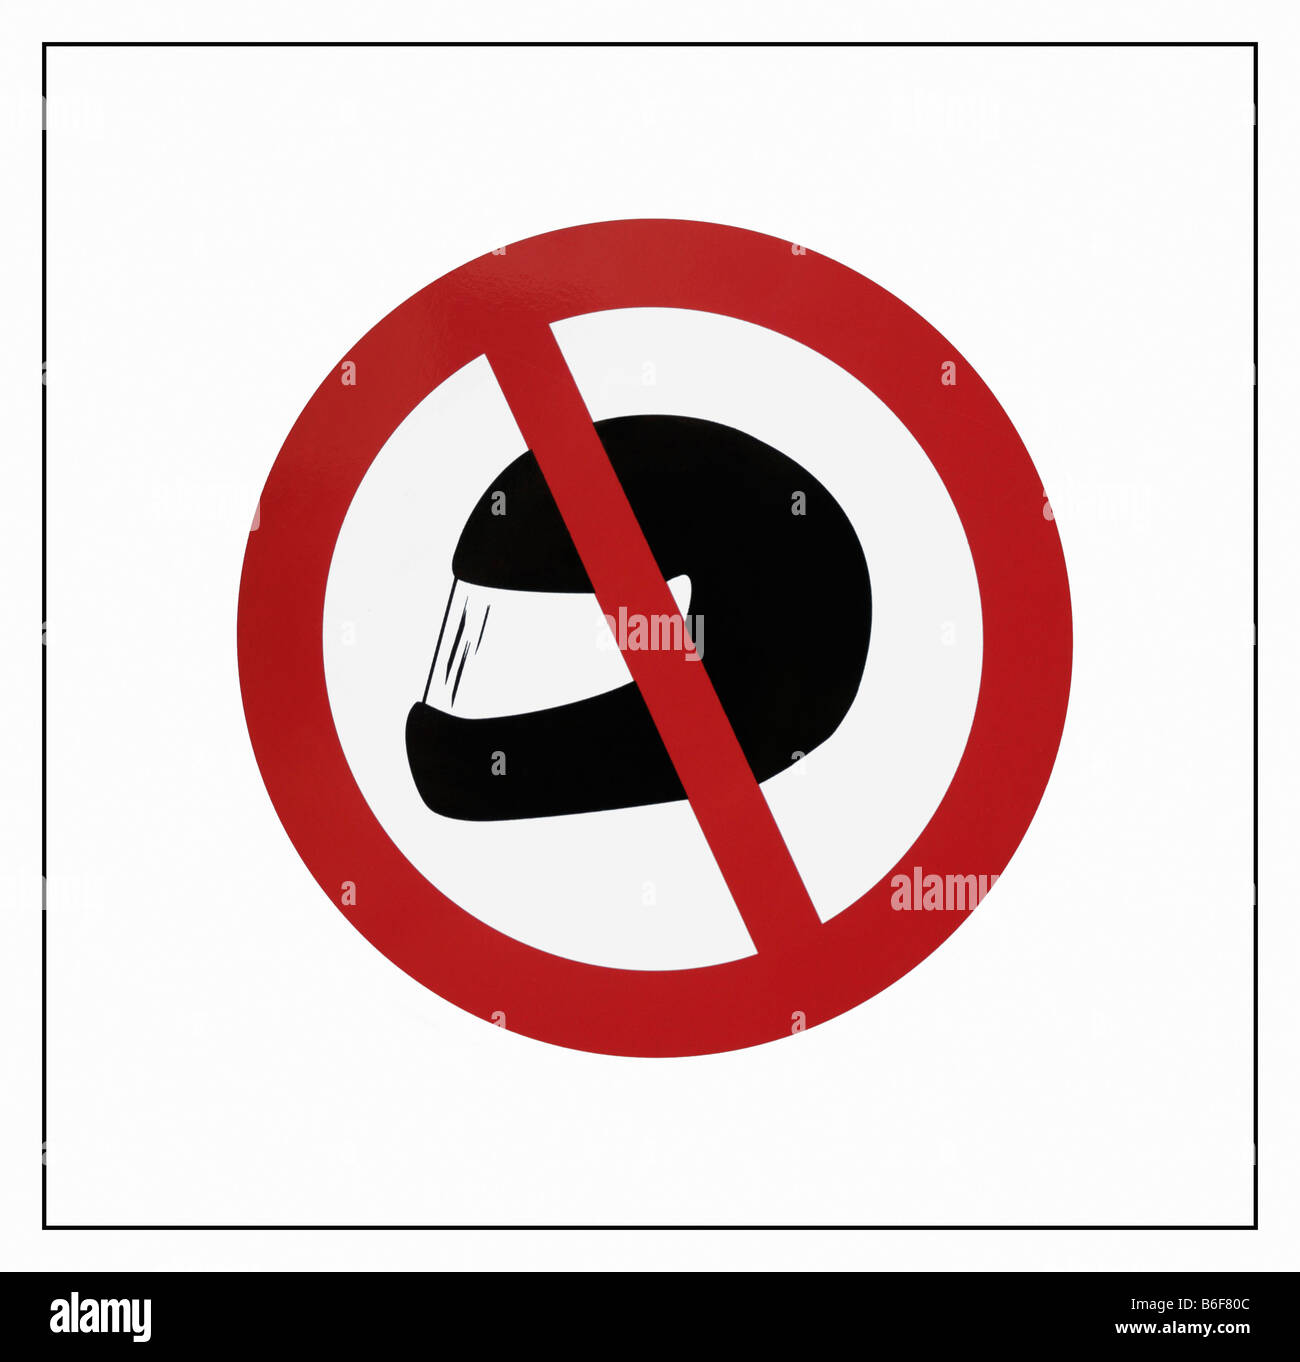 Segnale di divieto: No indossando dei caschi per motociclisti, banca misura di sicurezza Foto Stock